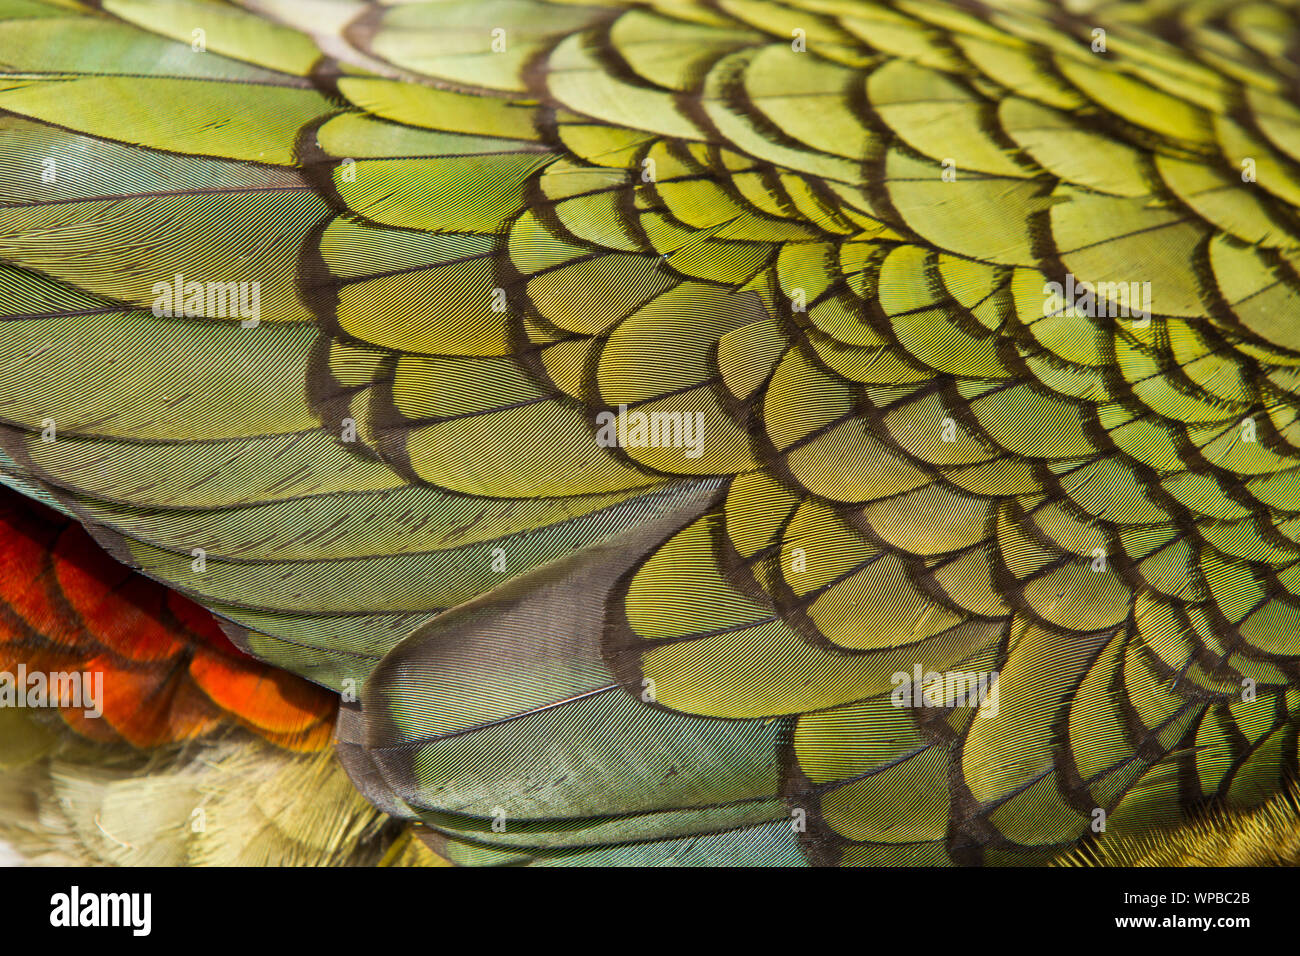 Kea Nestor notabilis. adult, close-up of wing feathers, Lake Manapouri, New Zealand, November Stock Photo